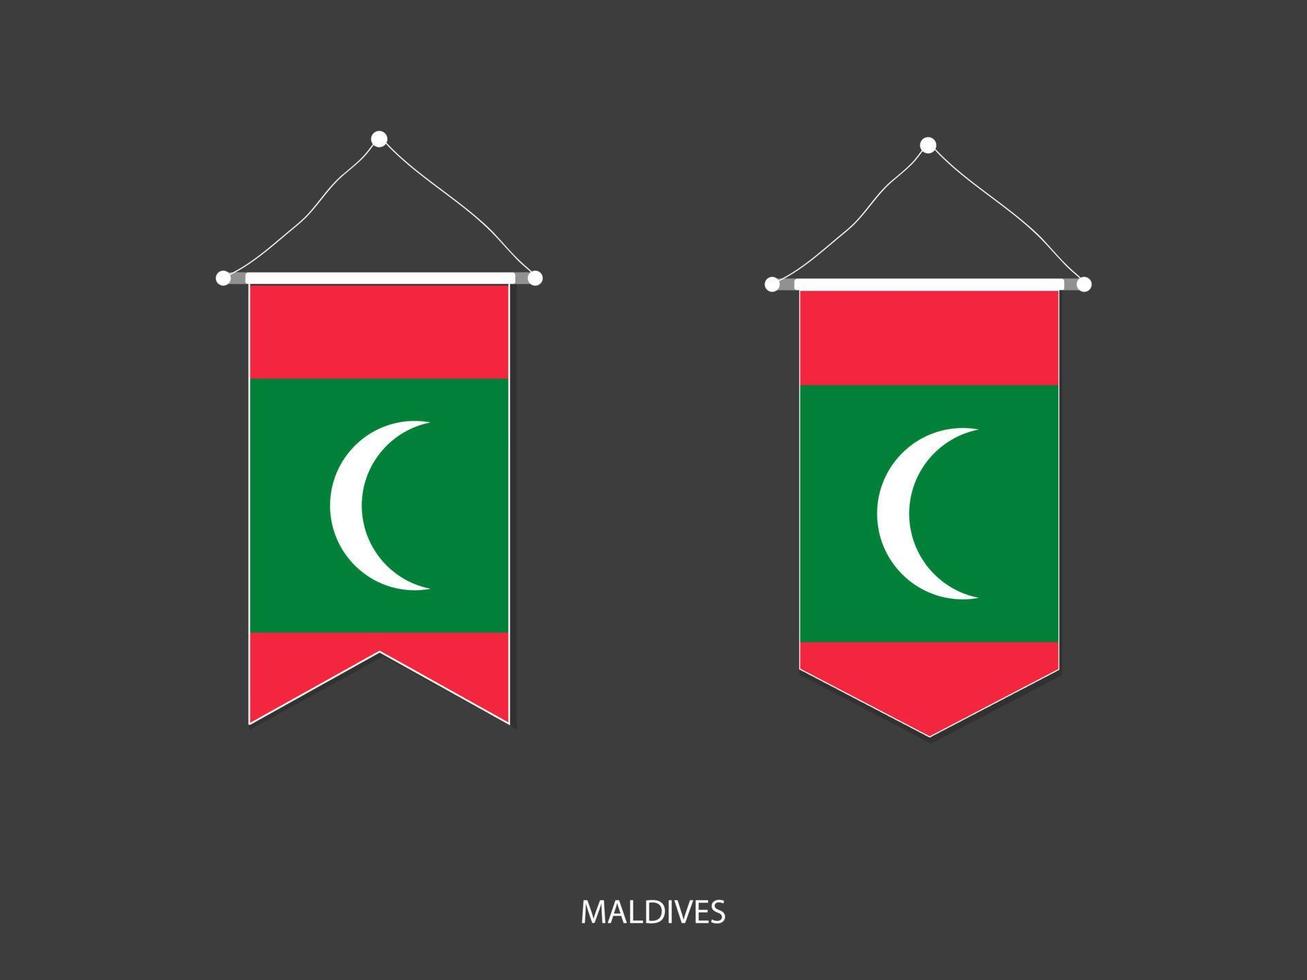 bandera de maldivas en varias formas, vector de banderín de bandera de fútbol, ilustración vectorial.